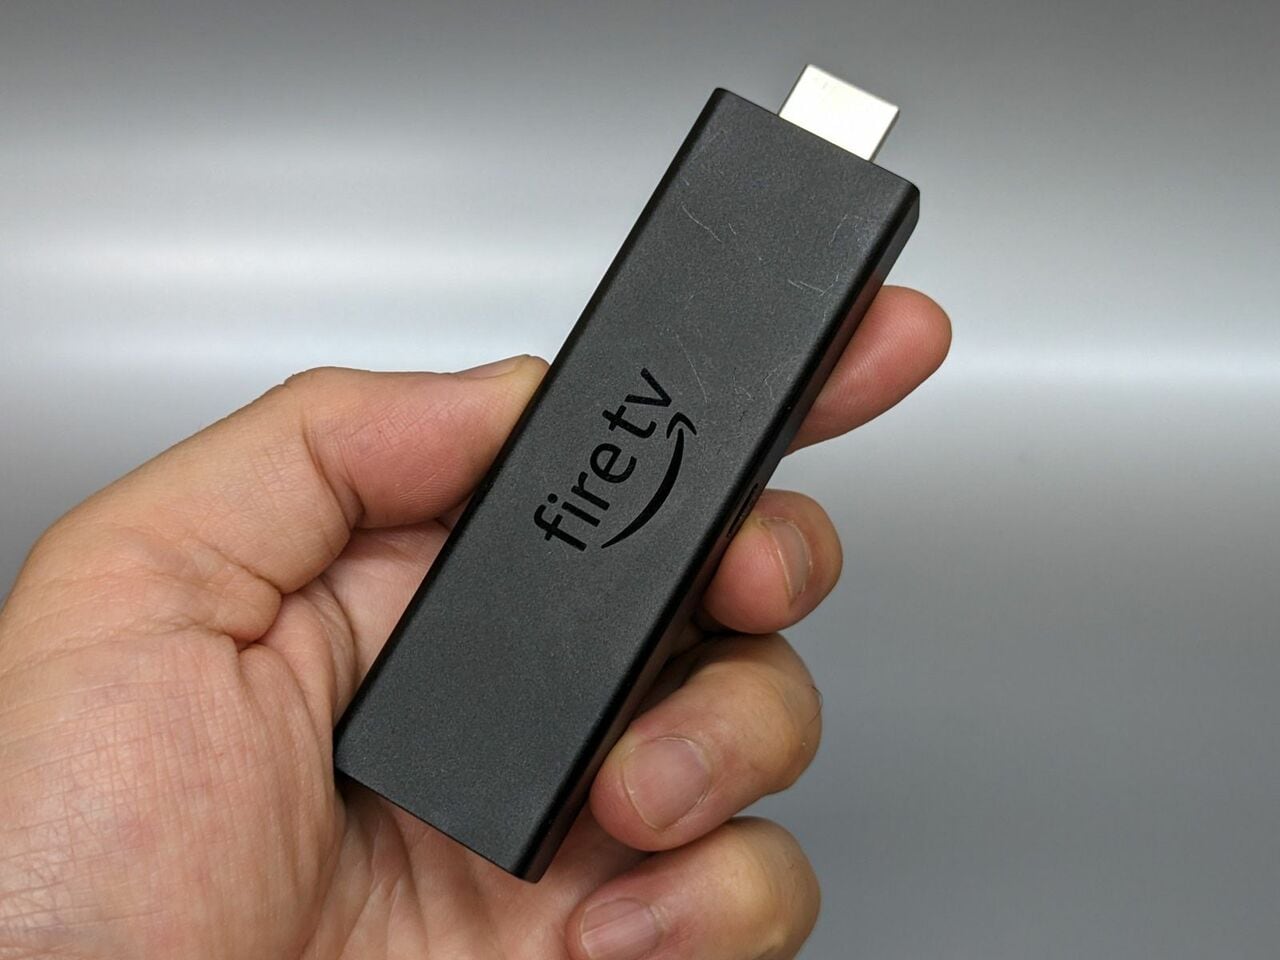 Amazonの「Fire TV Stick」。テレビのHDMIポートに接続して使う製品で、スマホのミラーリングにも対応しています